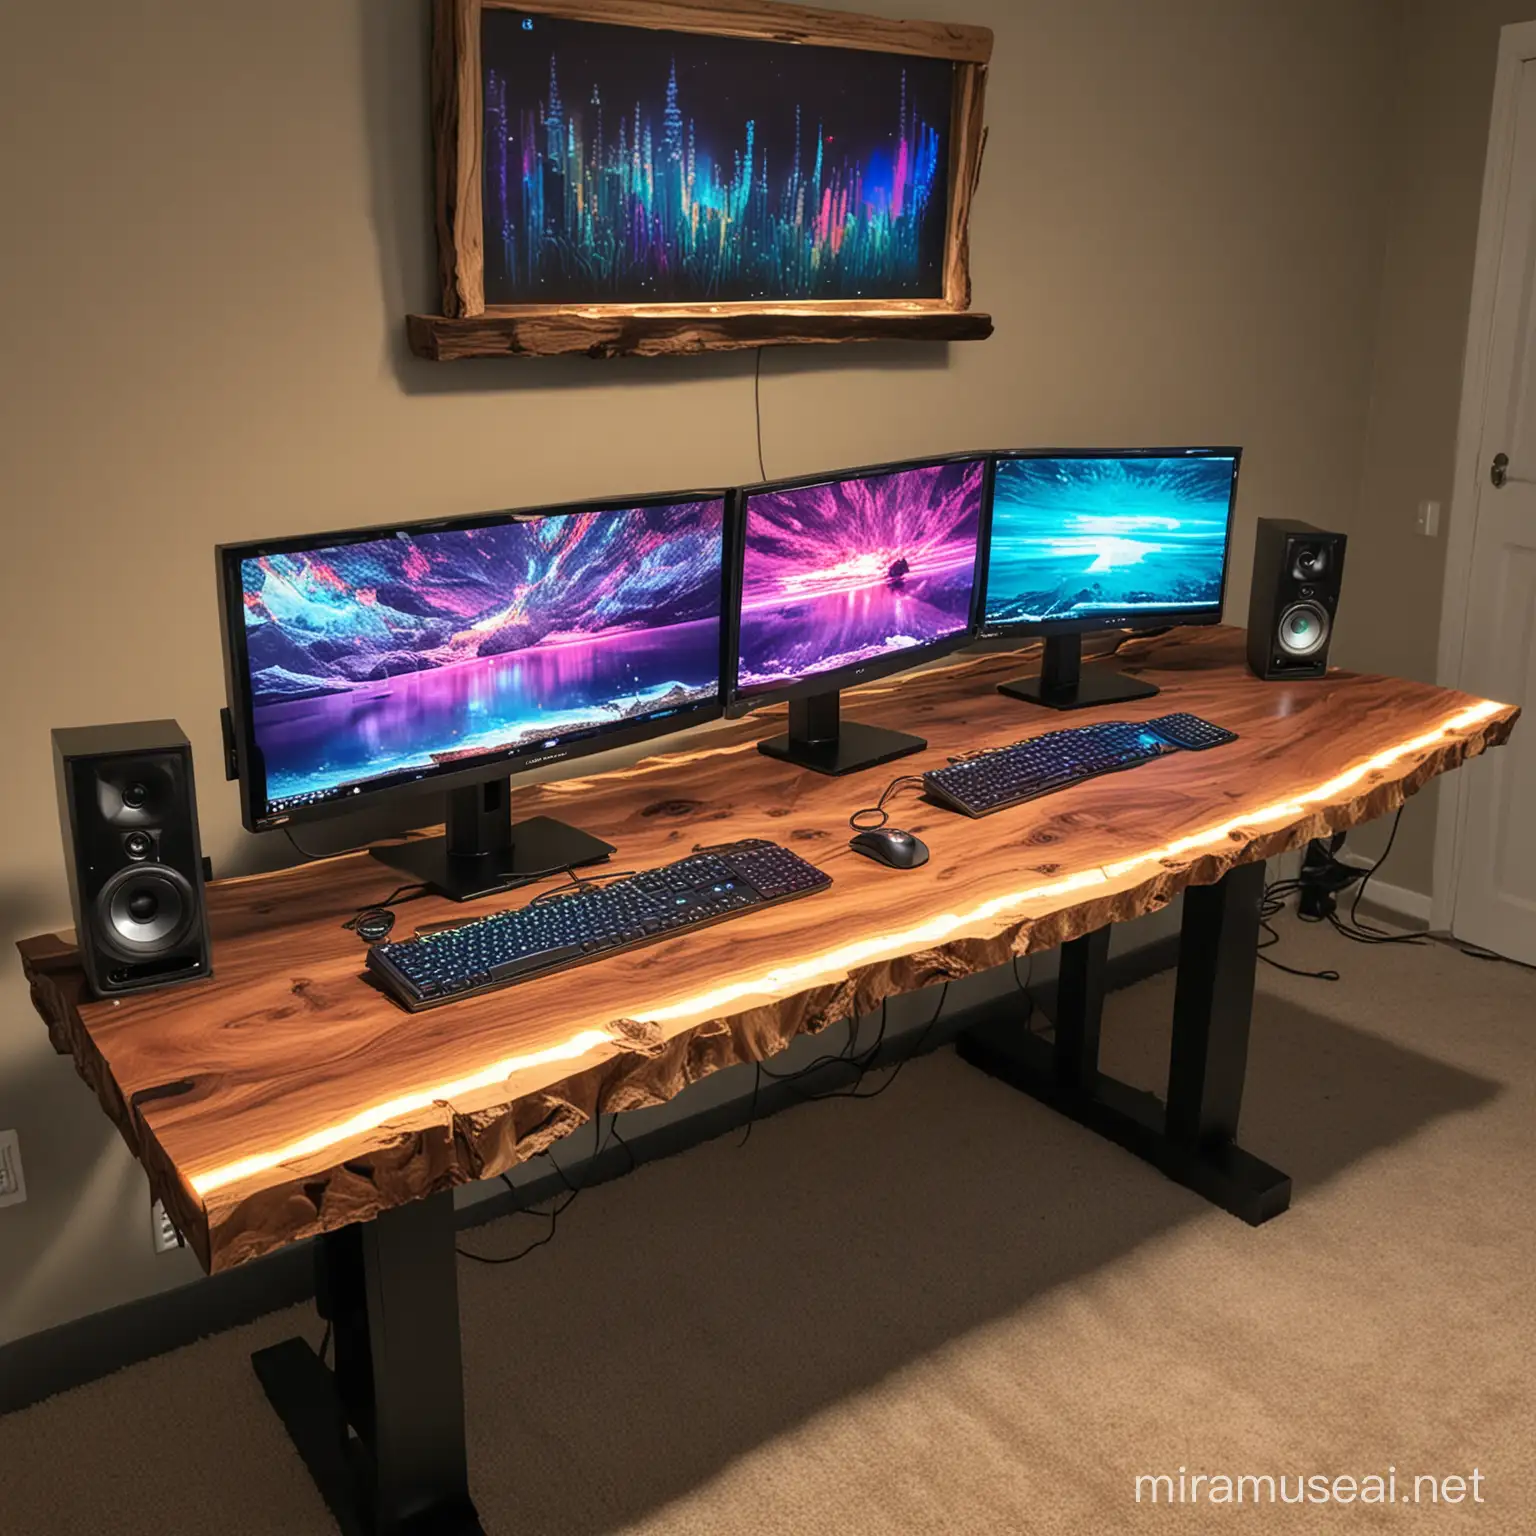 high end computer setup on a live edge table with RGB lighting.
